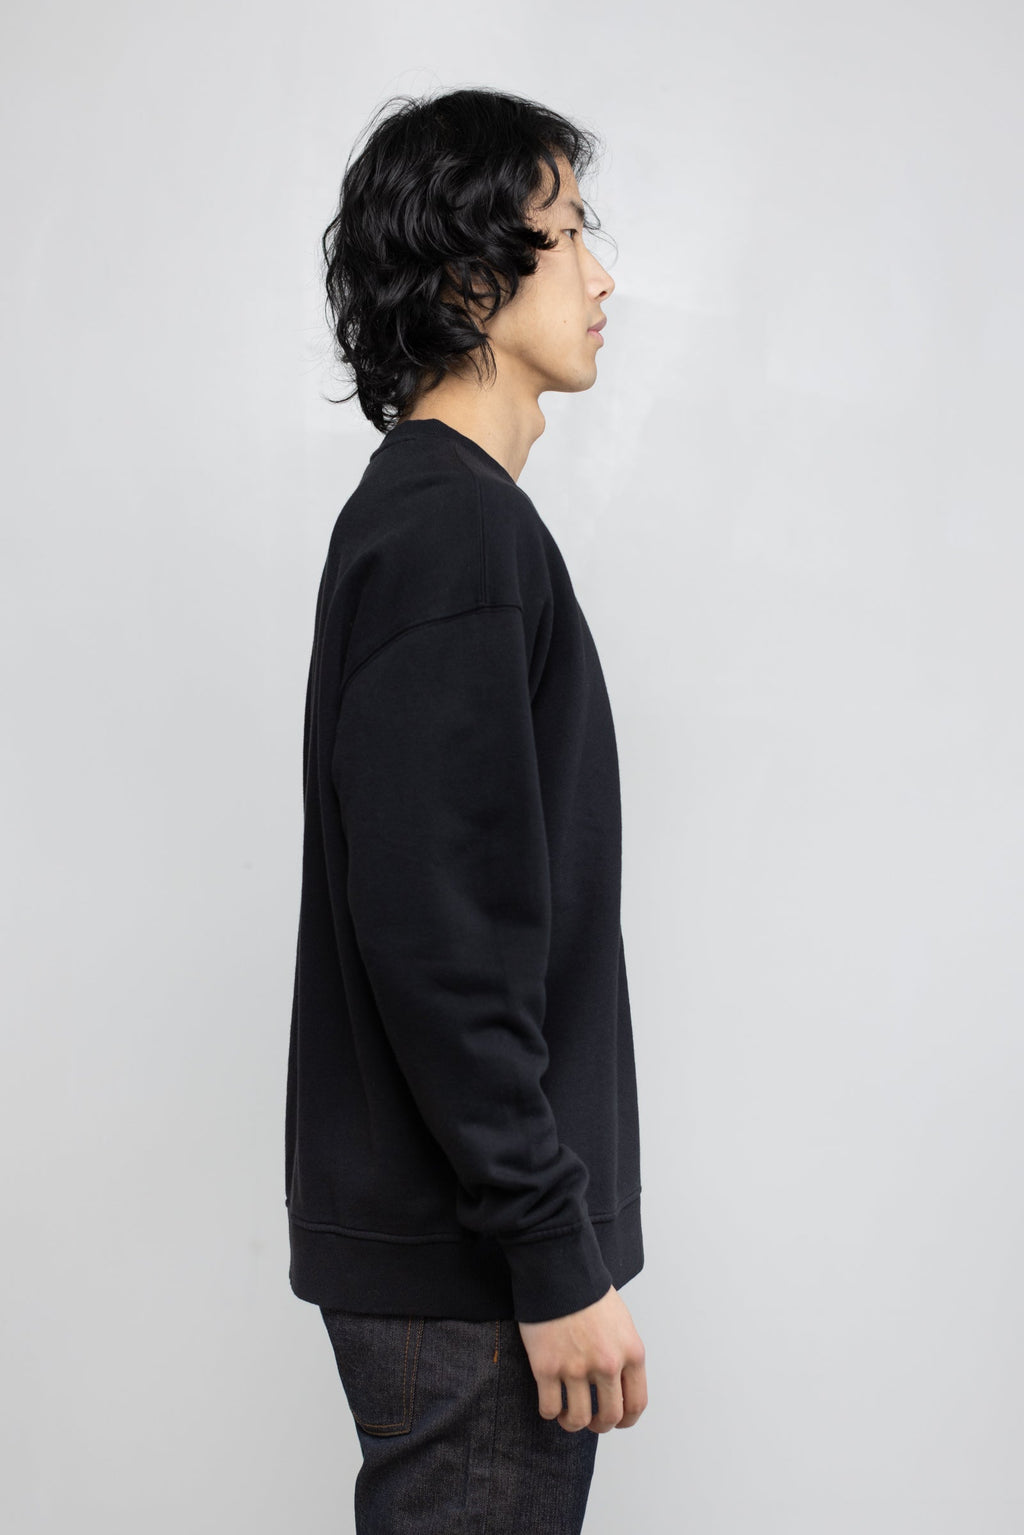 Cotton Fleece Sweatshirt in Black 01